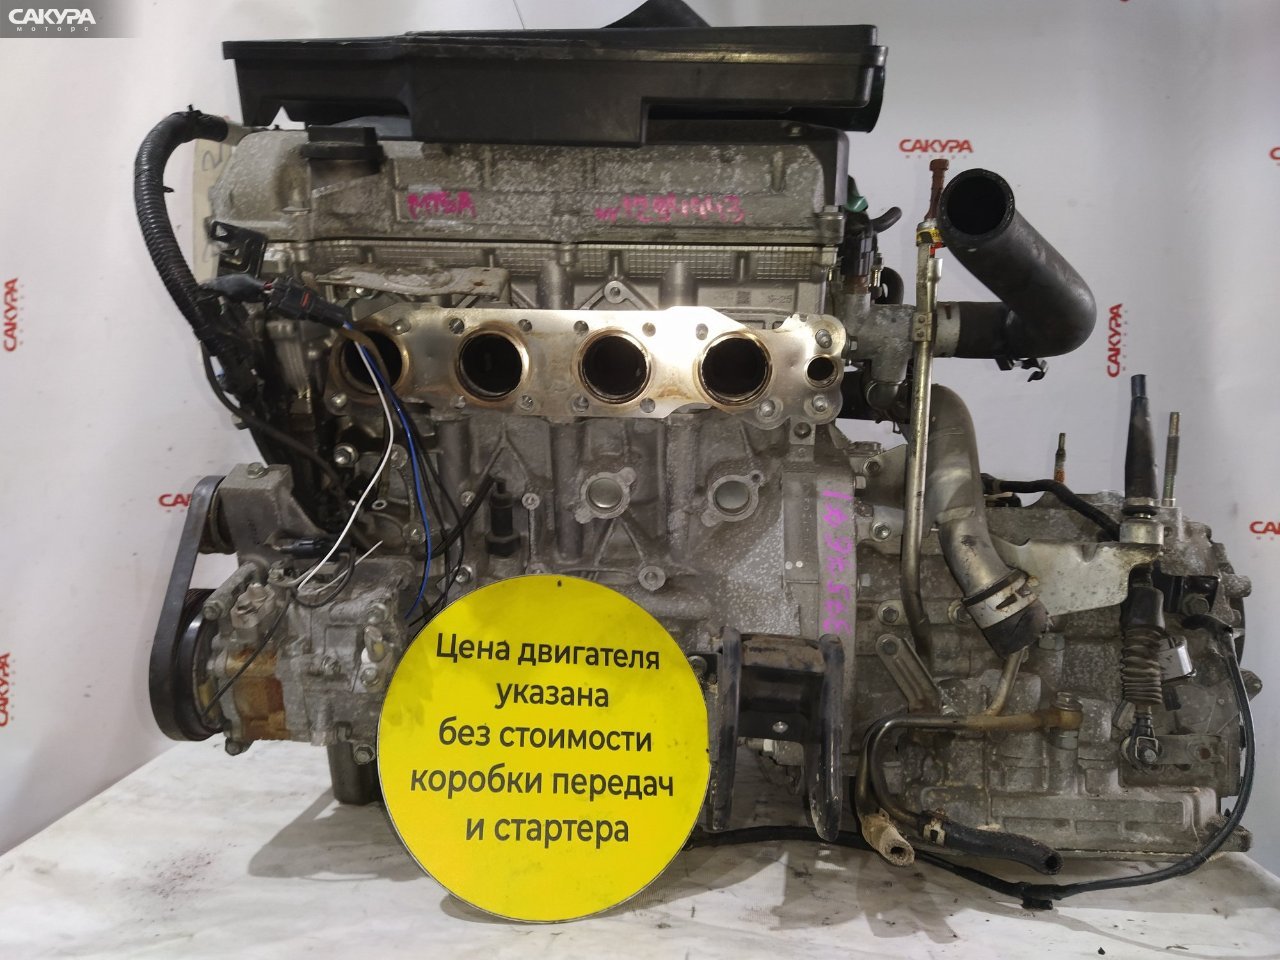 Двигатель Suzuki SX4 YA11S M15A: купить в Сакура Красноярск.